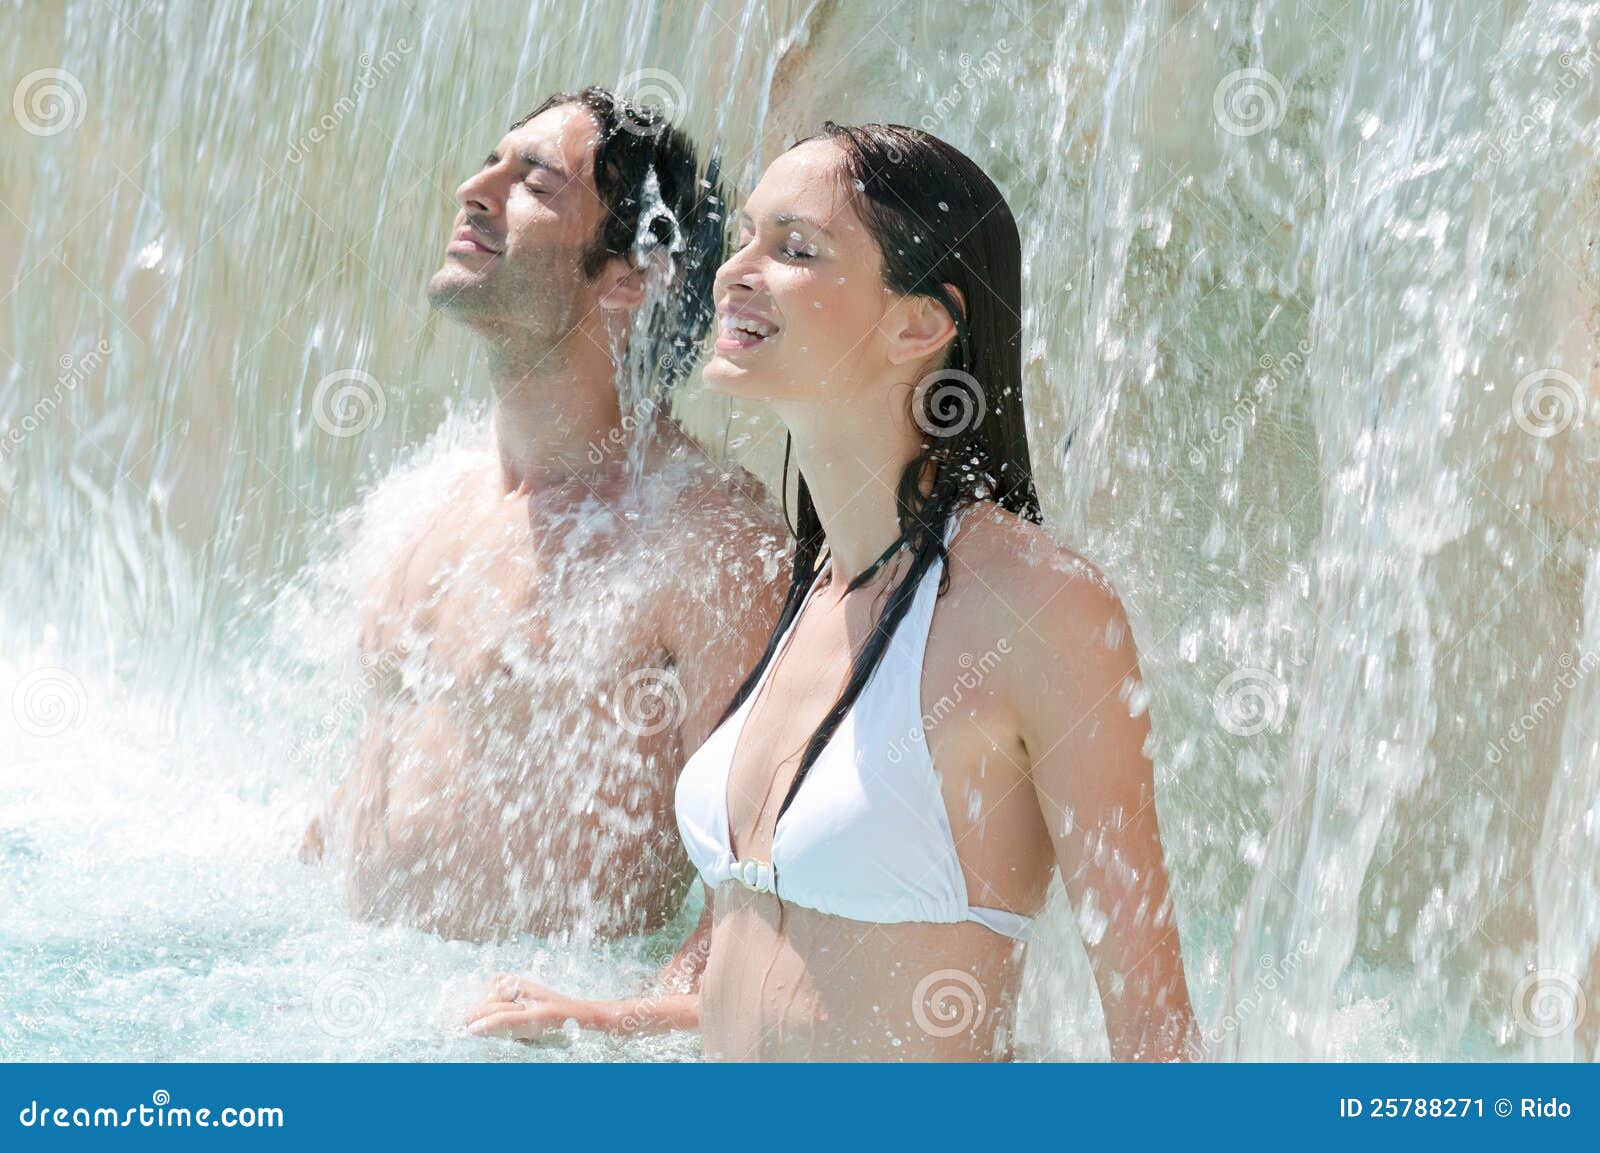 Купаемся в душе видео. Купание под водопадом. Девушка купается под водопадом. Мужчина и женщина купаются. Парень с девушкой купаются.